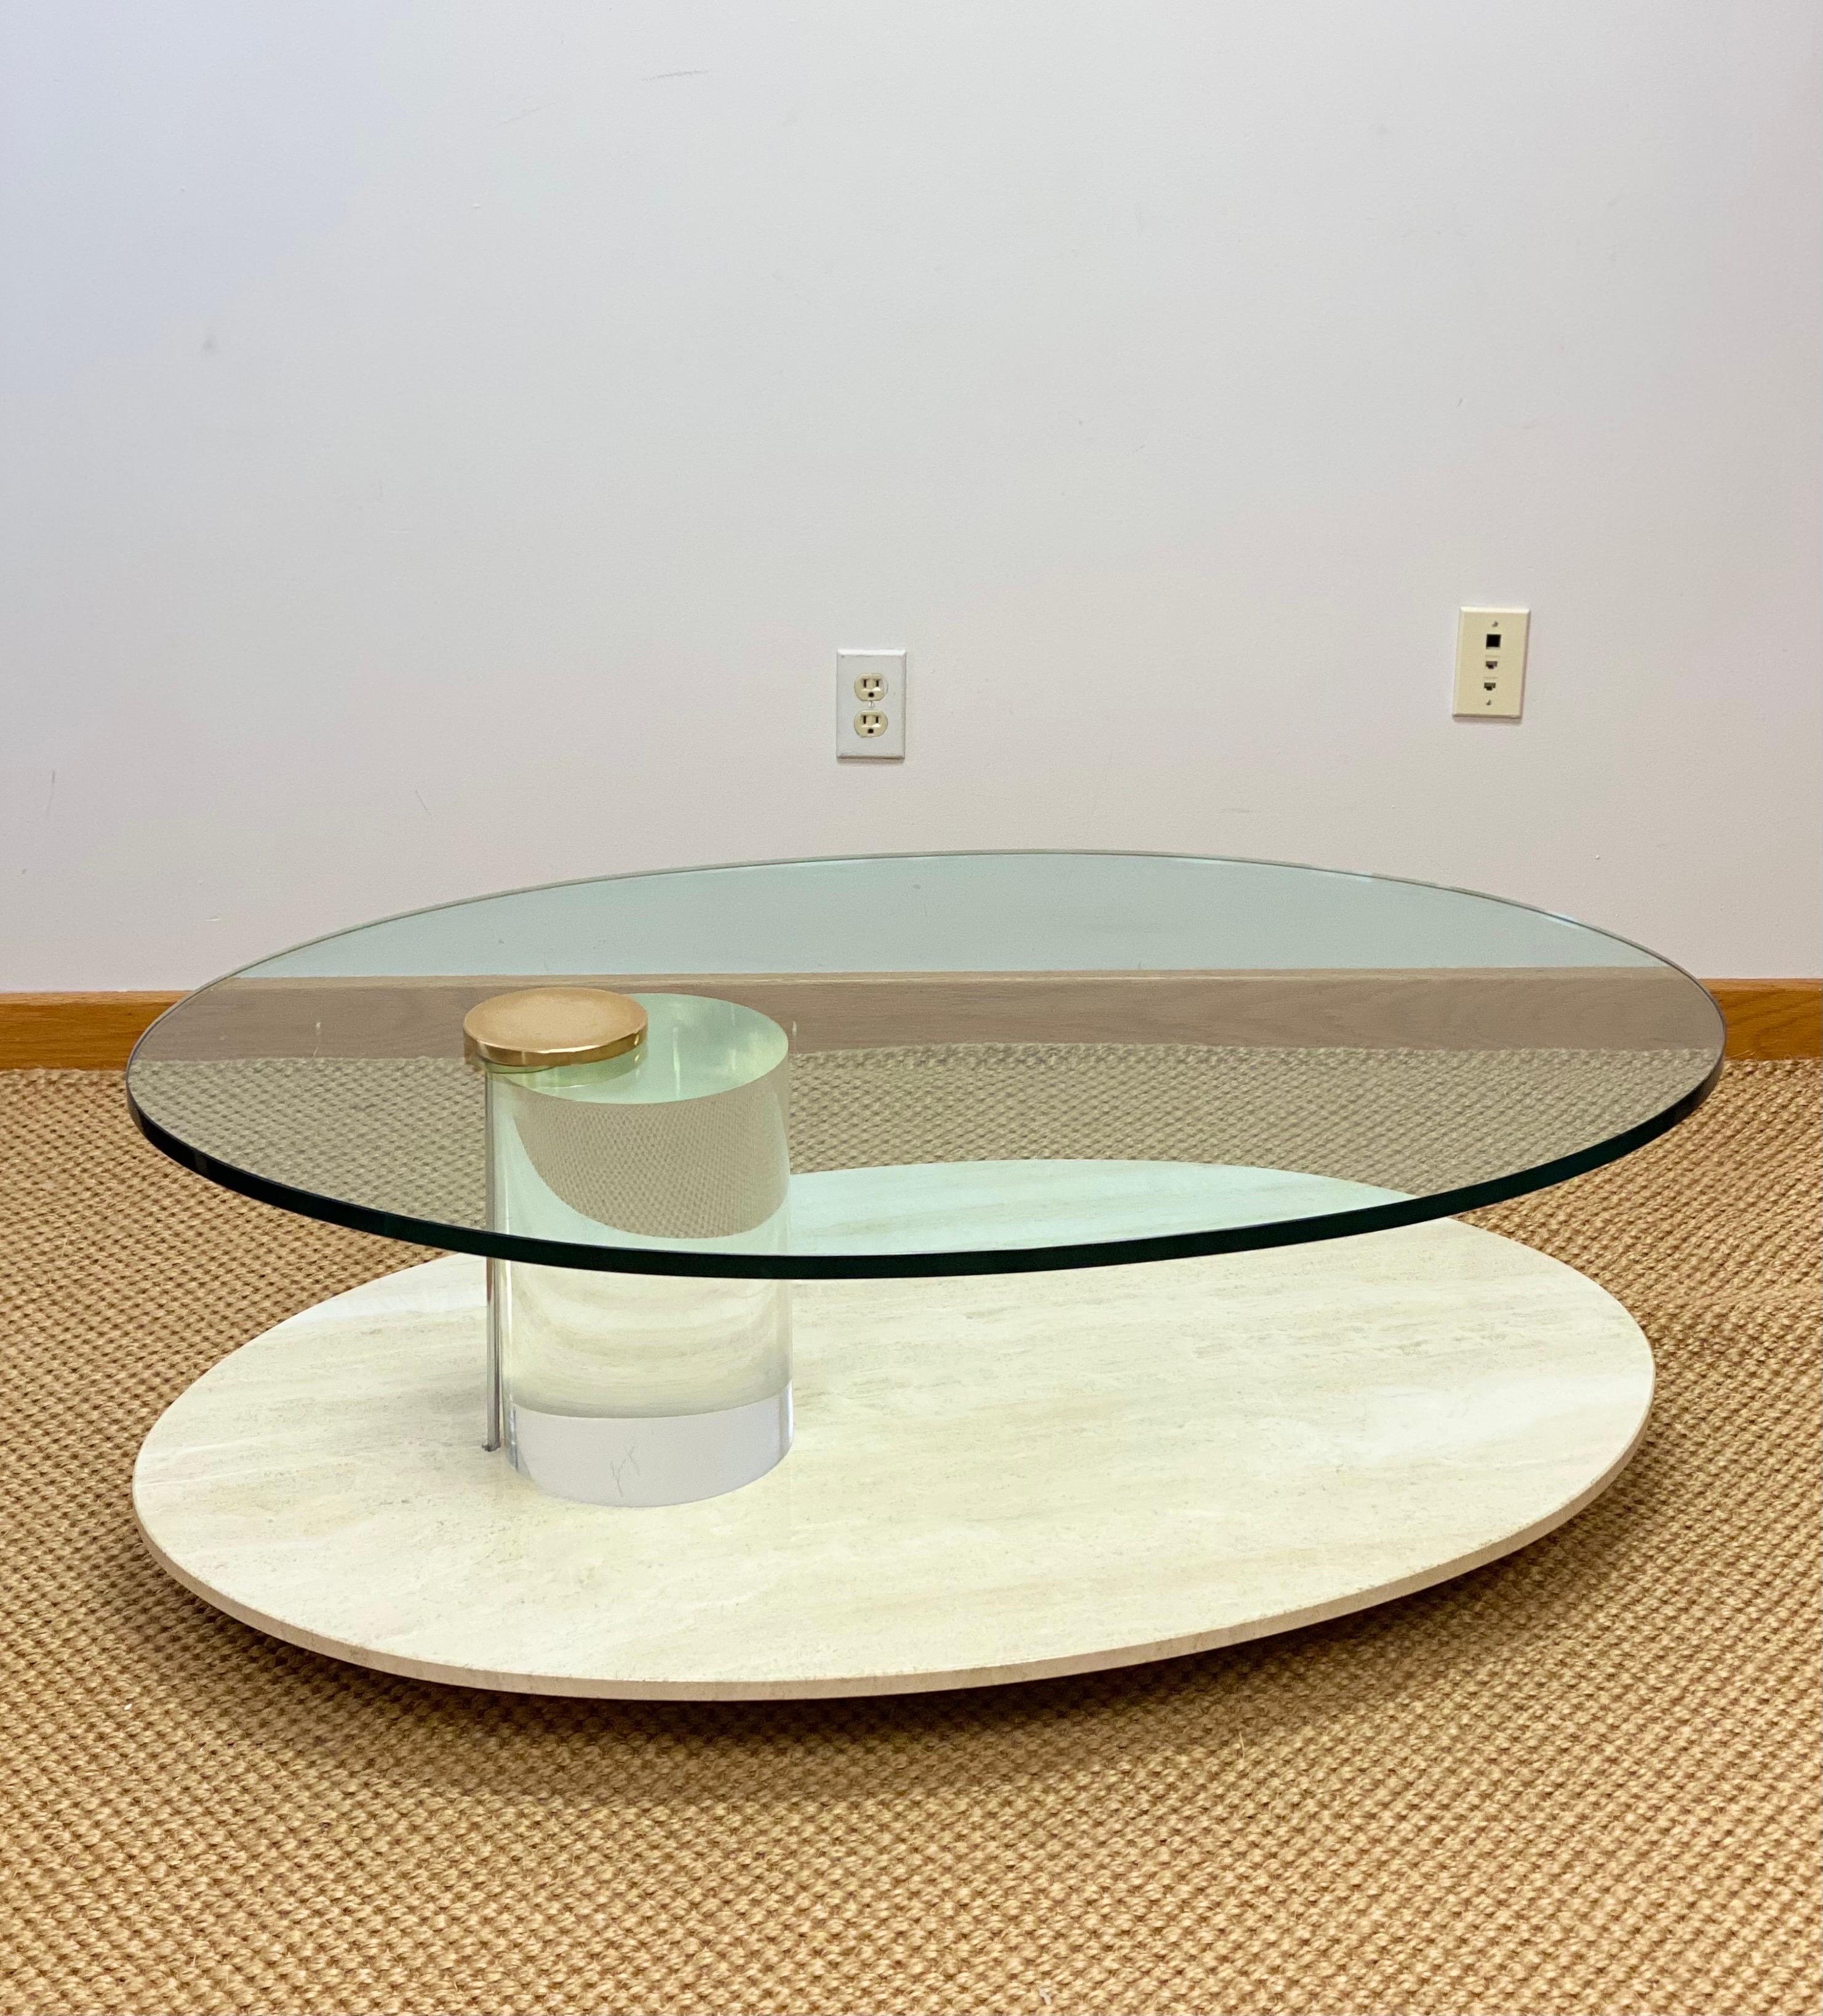 Nous avons le plaisir de vous proposer une magnifique table aux lignes épurées, réalisée par Lion in CIRCA vers les années 1970. Élégante dans sa simplicité et accrocheuse dans son exécution, cette pièce constitue une ancre dramatique pour l'espace